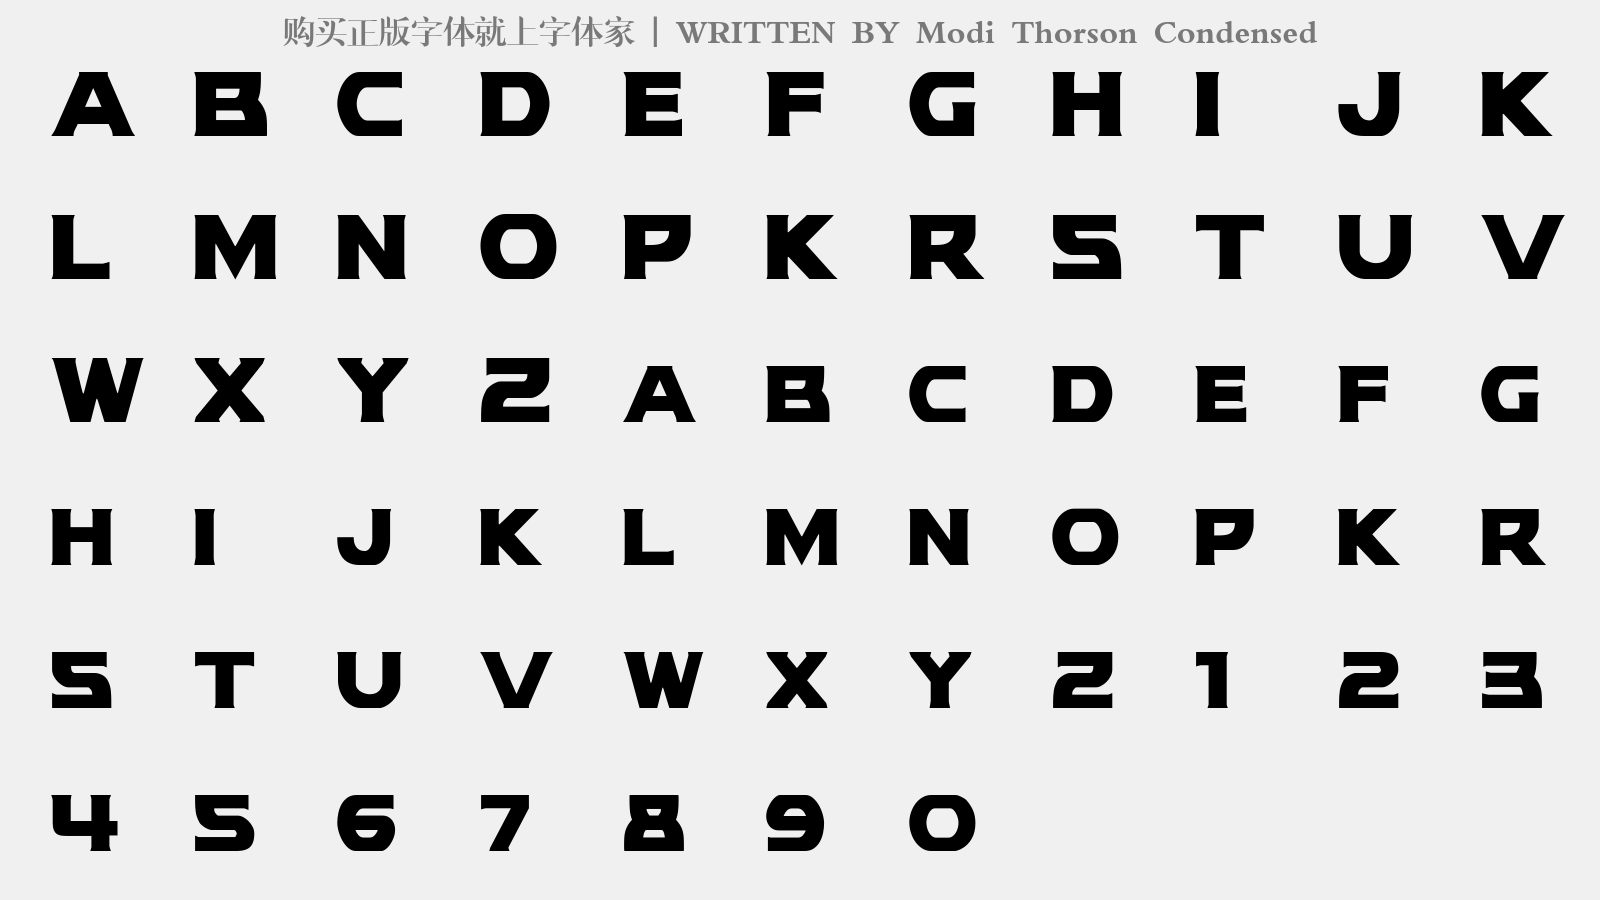 Modi Thorson Condensed - 大写字母/小写字母/数字